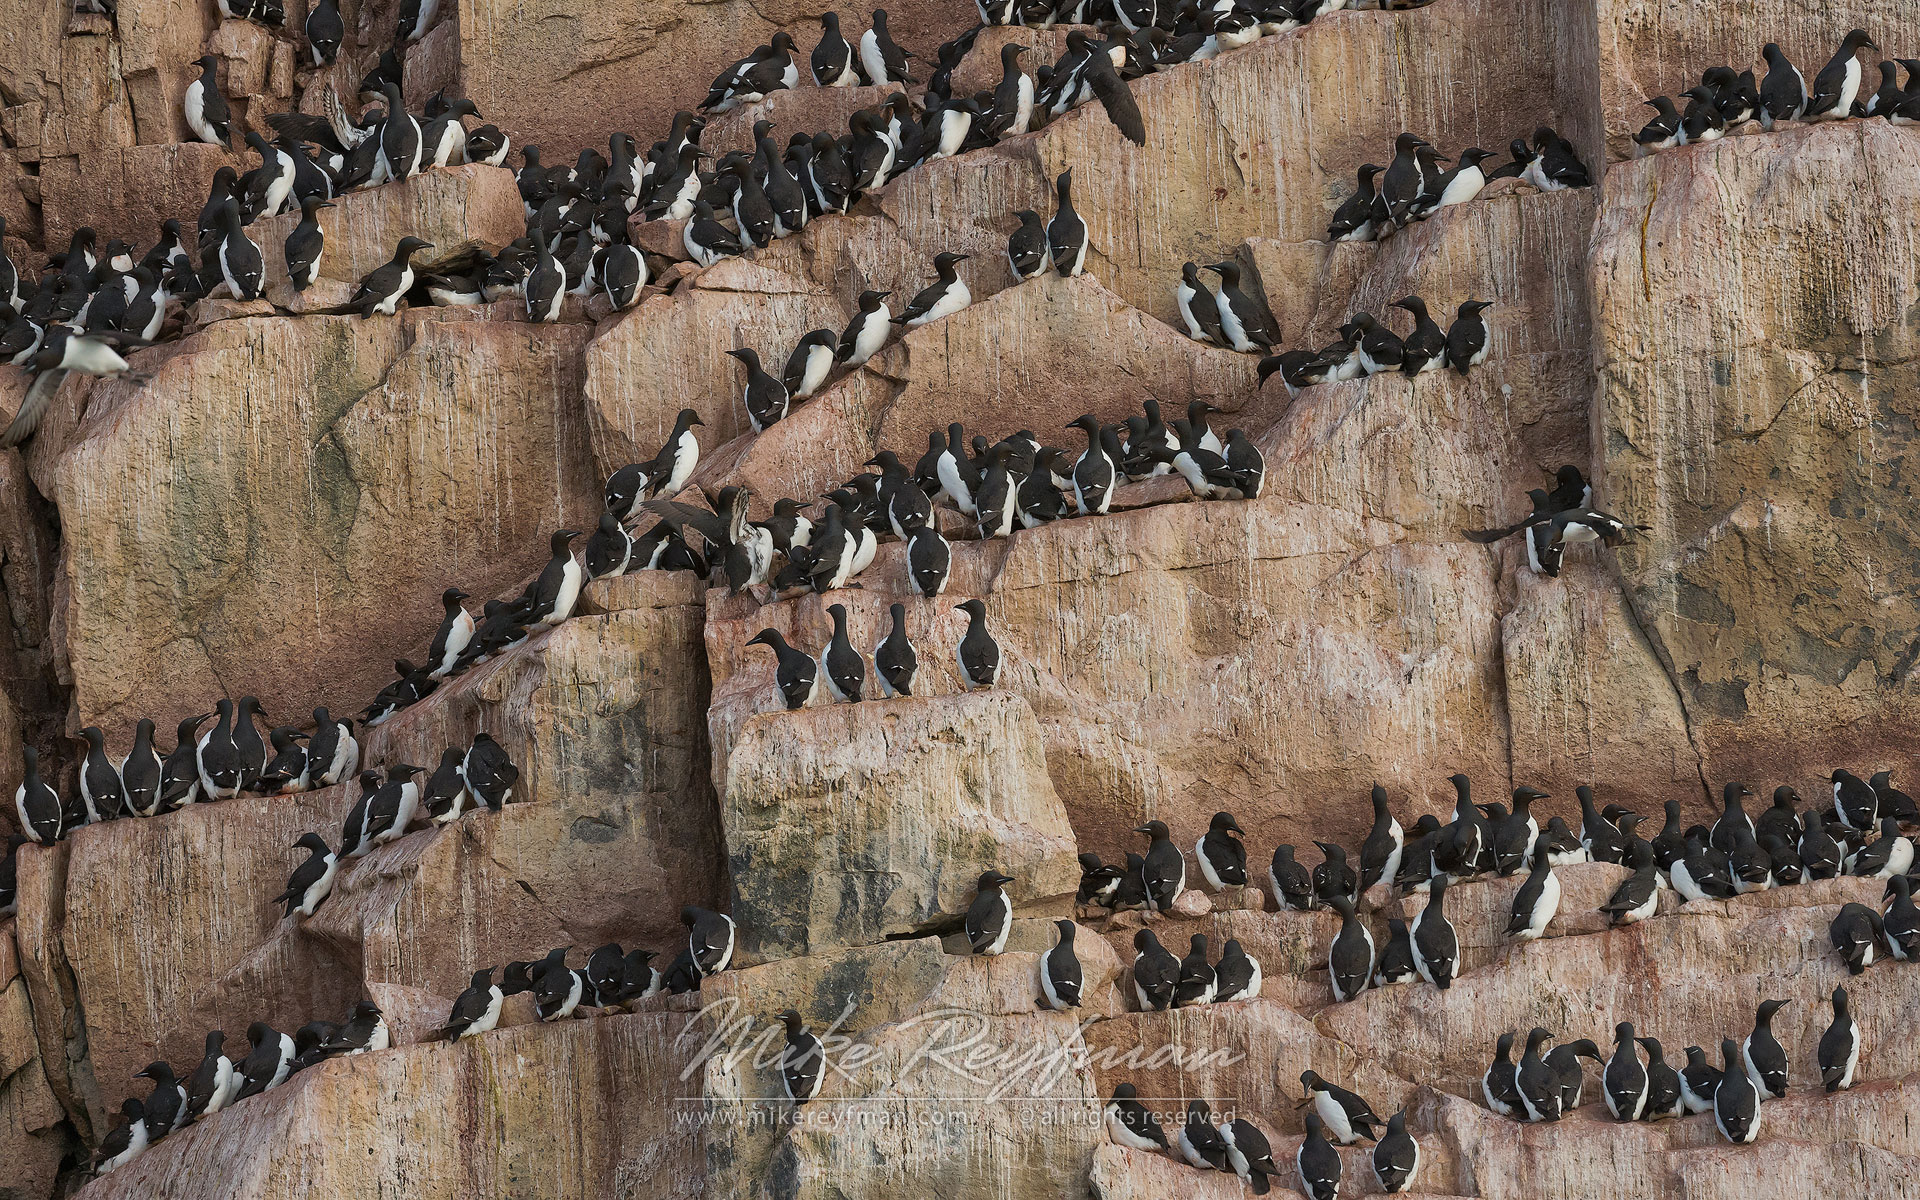 Thick-billed Murres or Brunnich's Guillemots (Uria lomvia). Bird cliff Alkefjellet, Spitsbergen, Svalbard, Norway. - Wildlife-Svalbard-Spitsbergen-Norway - Mike Reyfman Photography